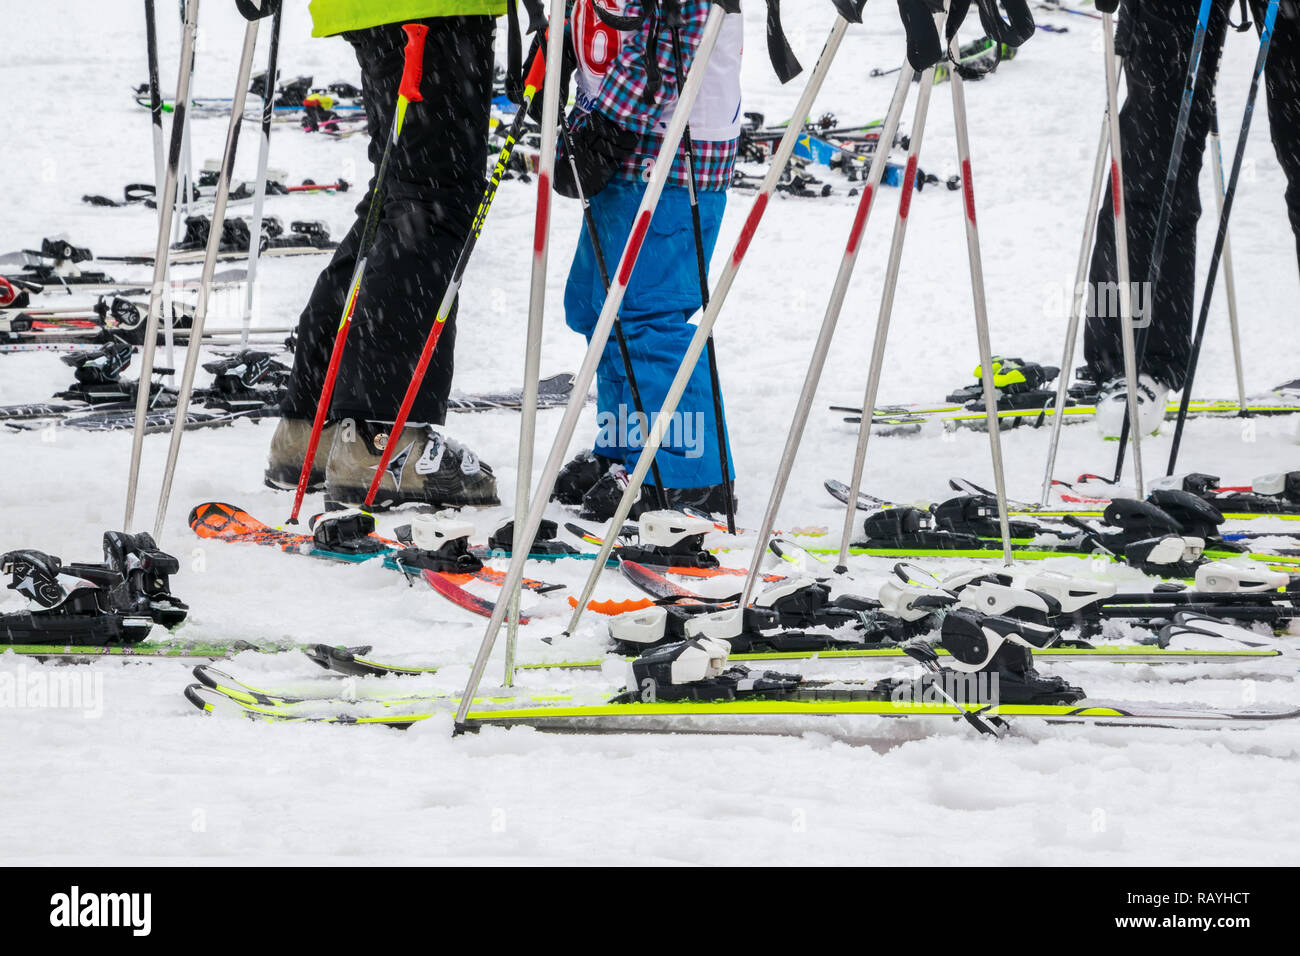 Viele Skistöcke und Ski mit einigen Beinen auf Schnee Stockfoto